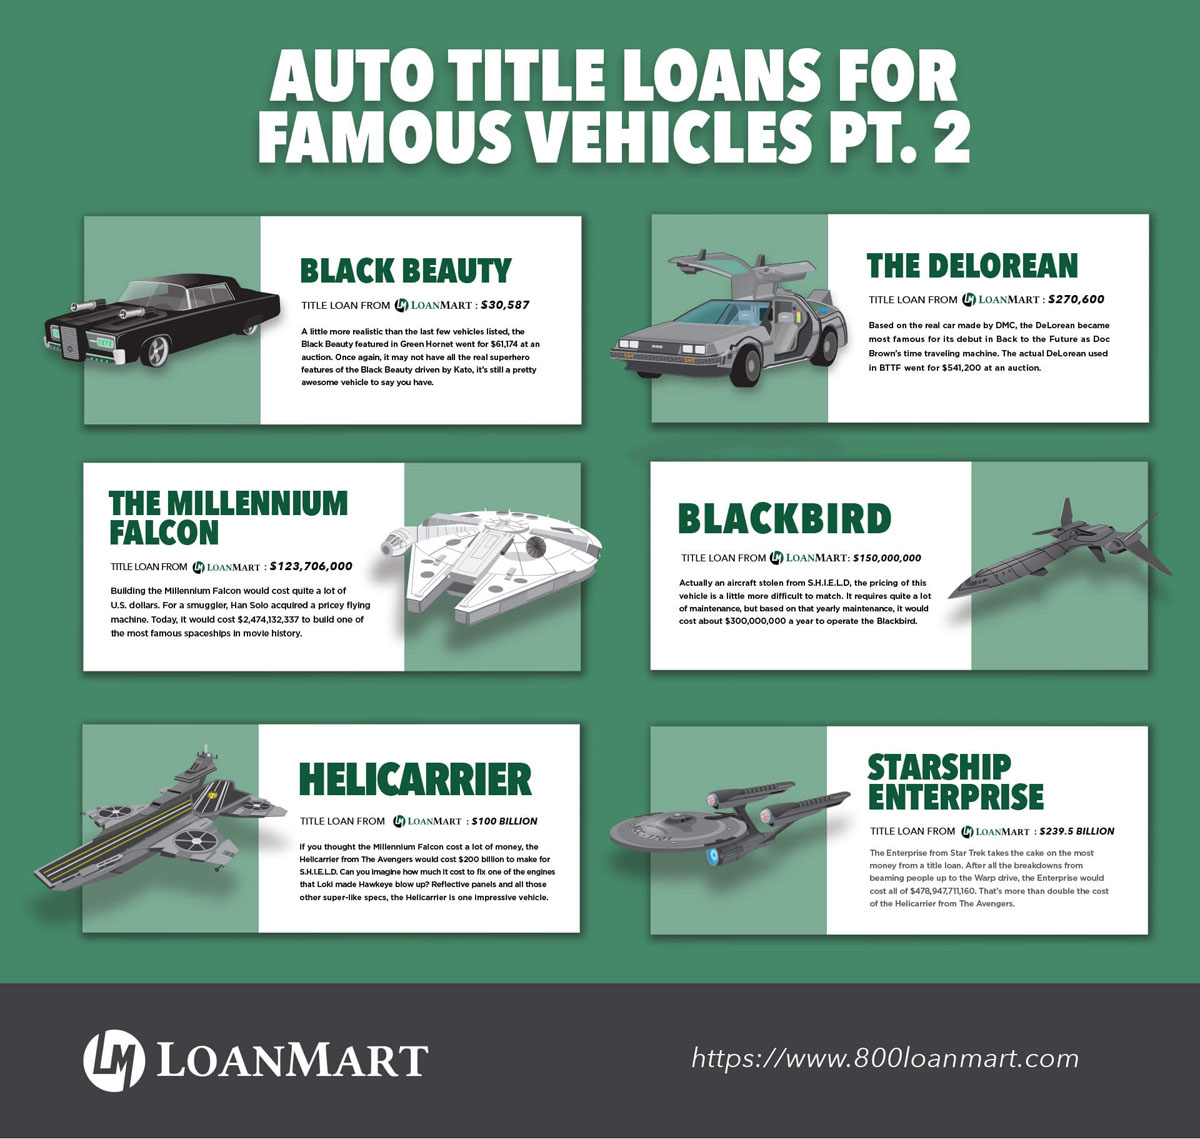 Auto Title Loans For Famous Vehicles: Part 2